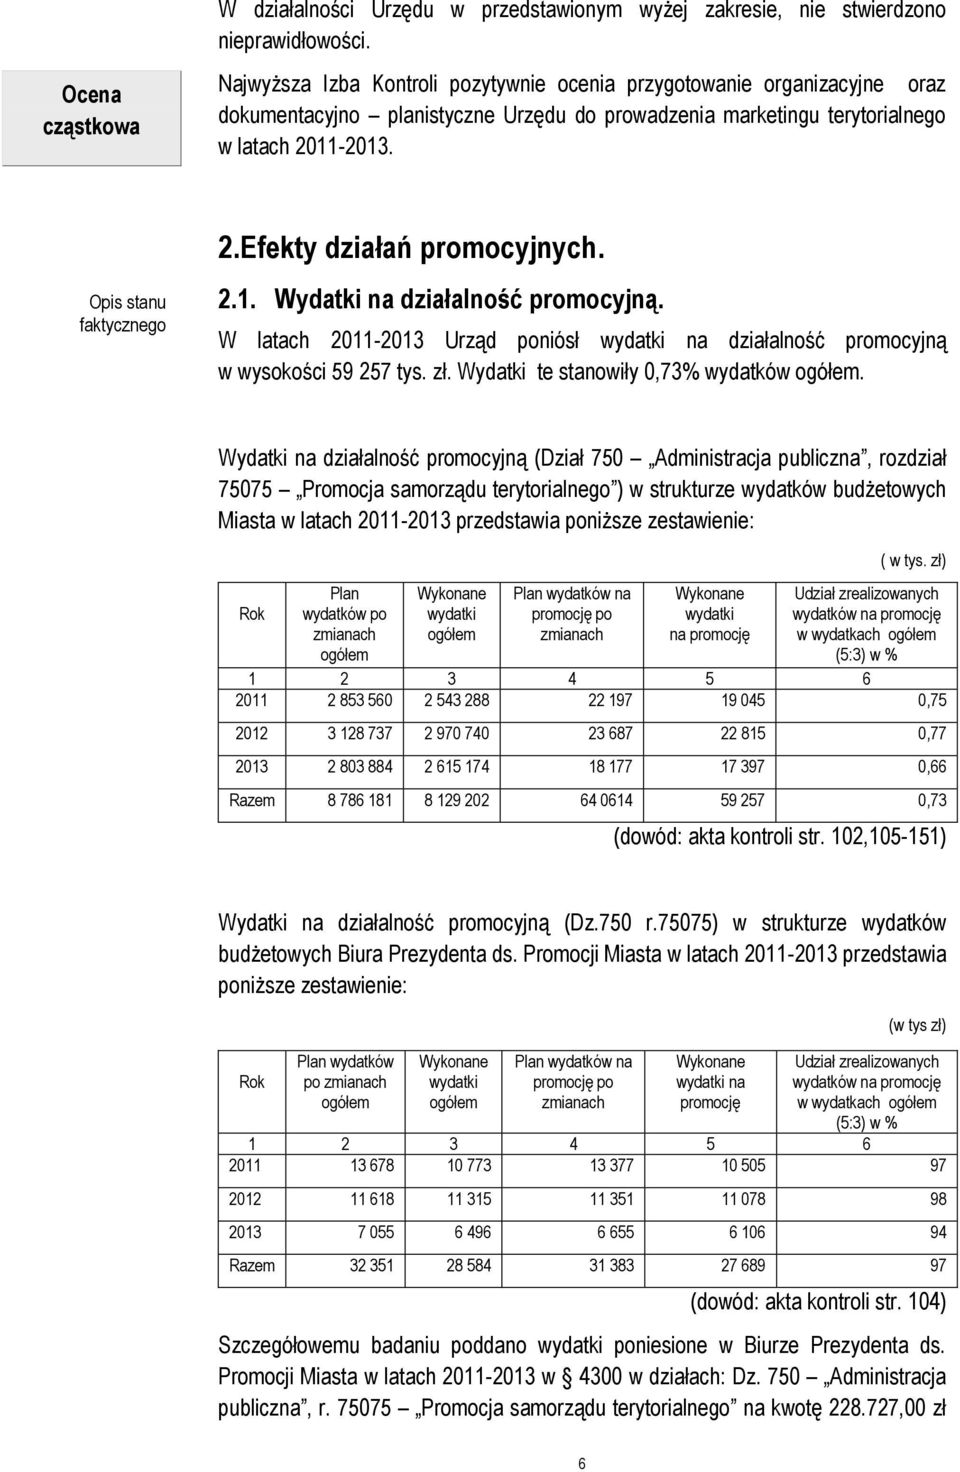 W latach 2011-2013 Urząd poniósł wydatki na działalność promocyjną w wysokości 59 257 tys. zł. Wydatki te stanowiły 0,73% wydatków ogółem.